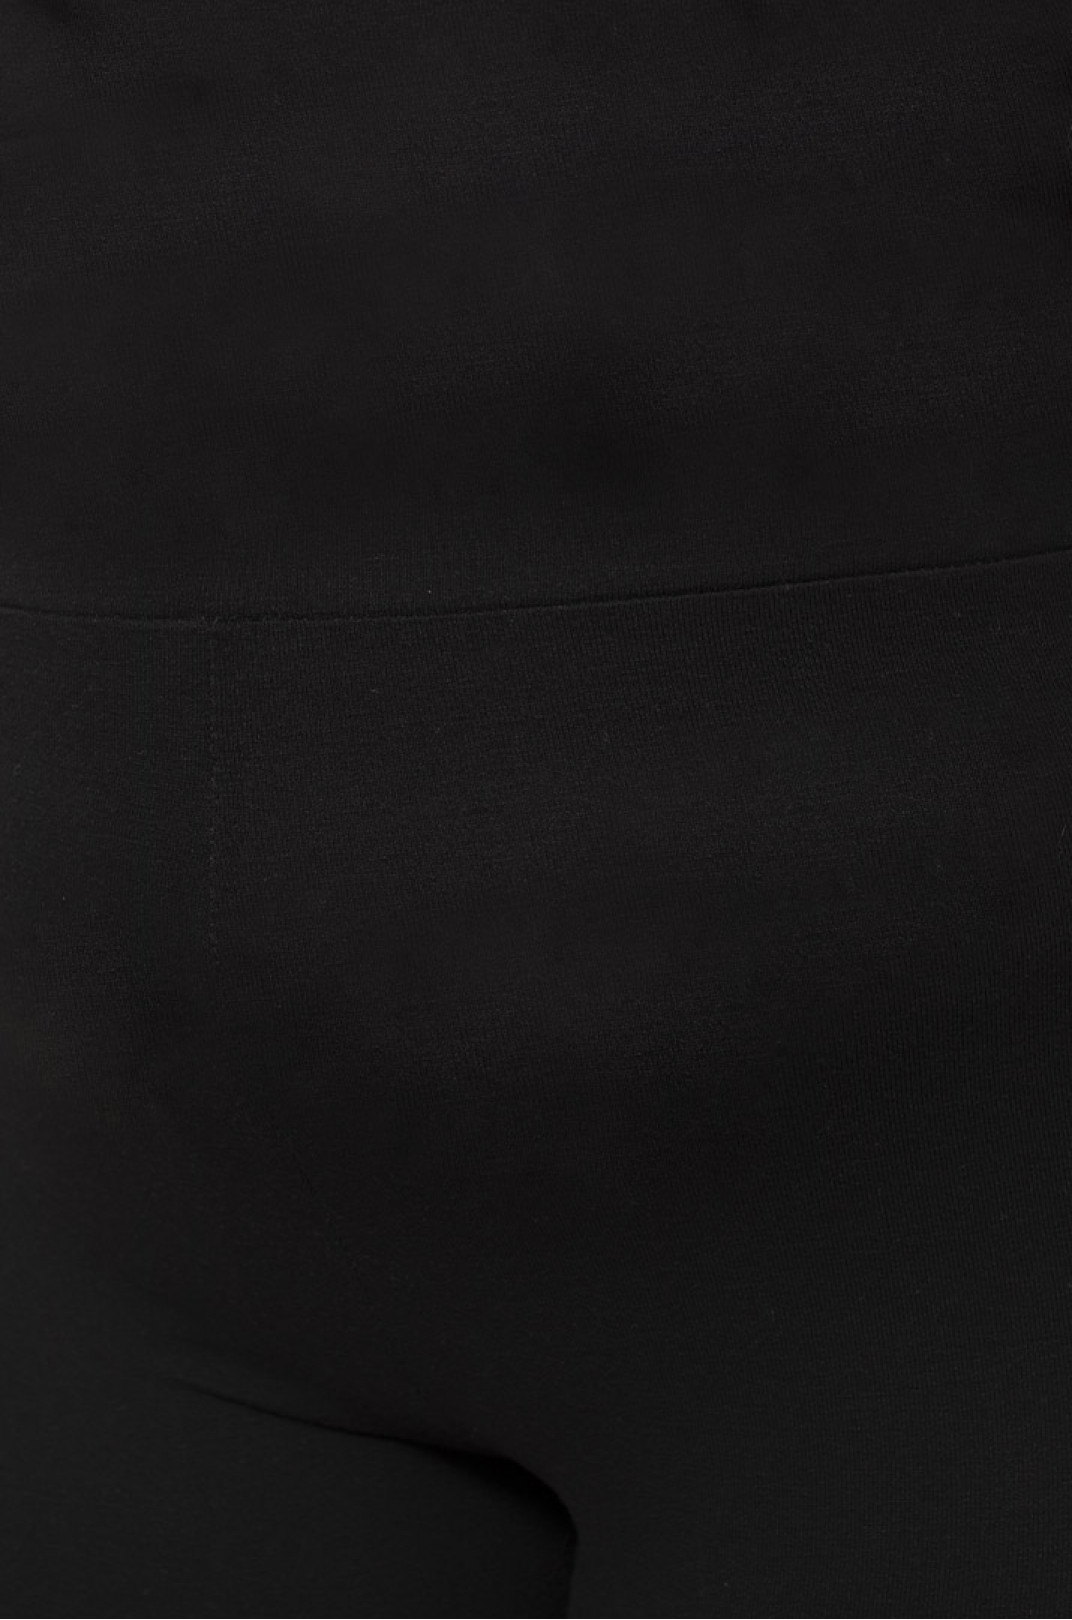 Лосины черные базовые на широкой резинке супер батал